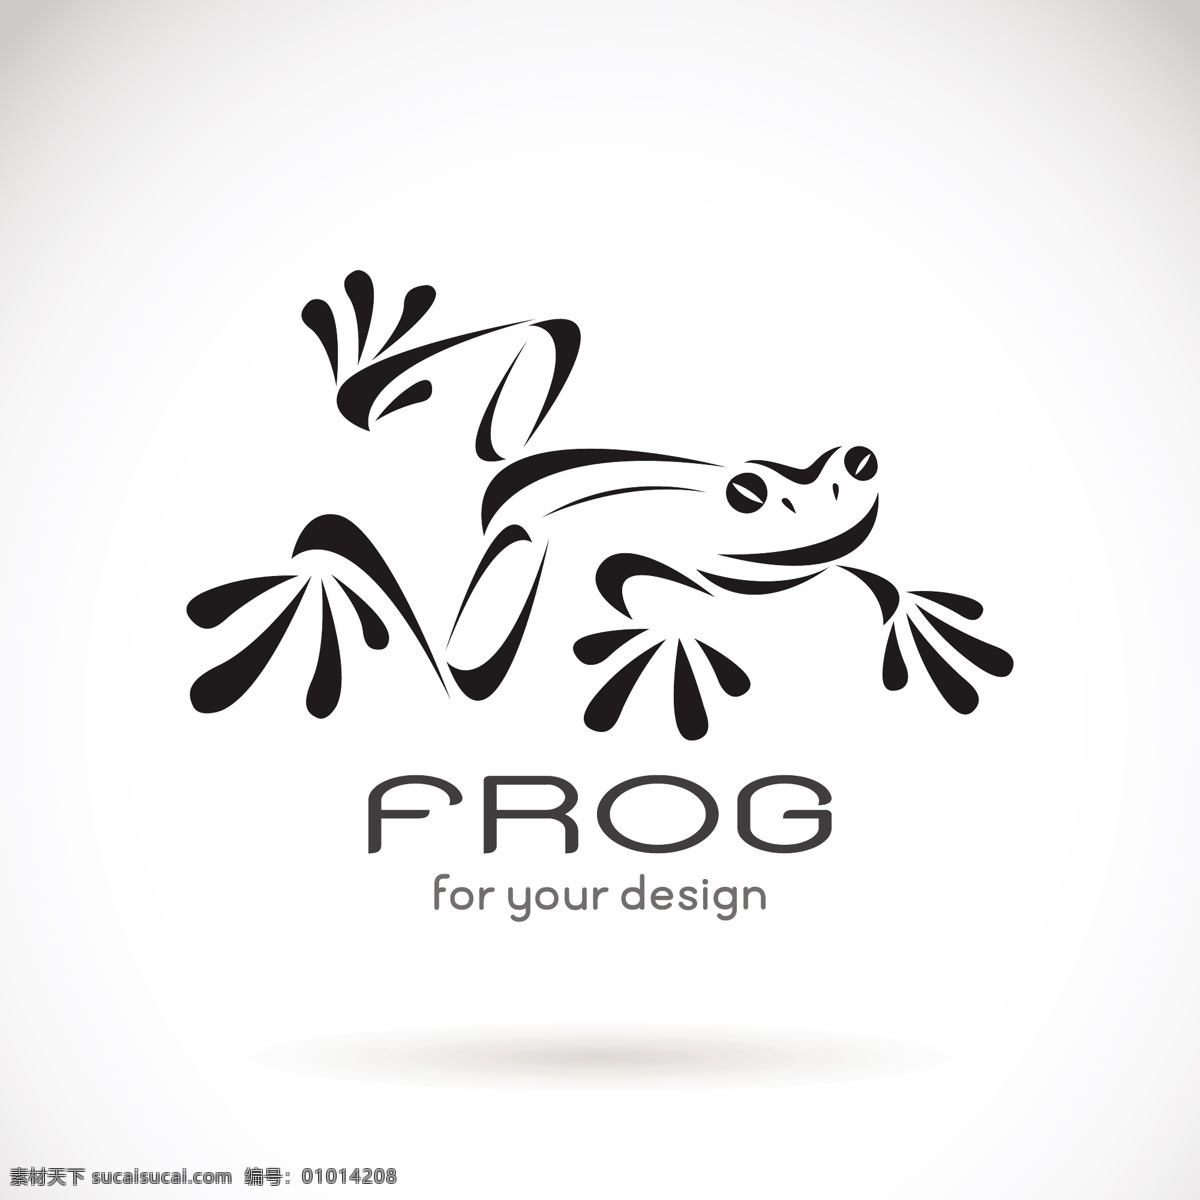 黑色 抽象 青蛙 logo 矢量 蟾蜍 动物 黑色logo 可爱 生态环境 自然 艺术插图 绘画 图标 logo设计